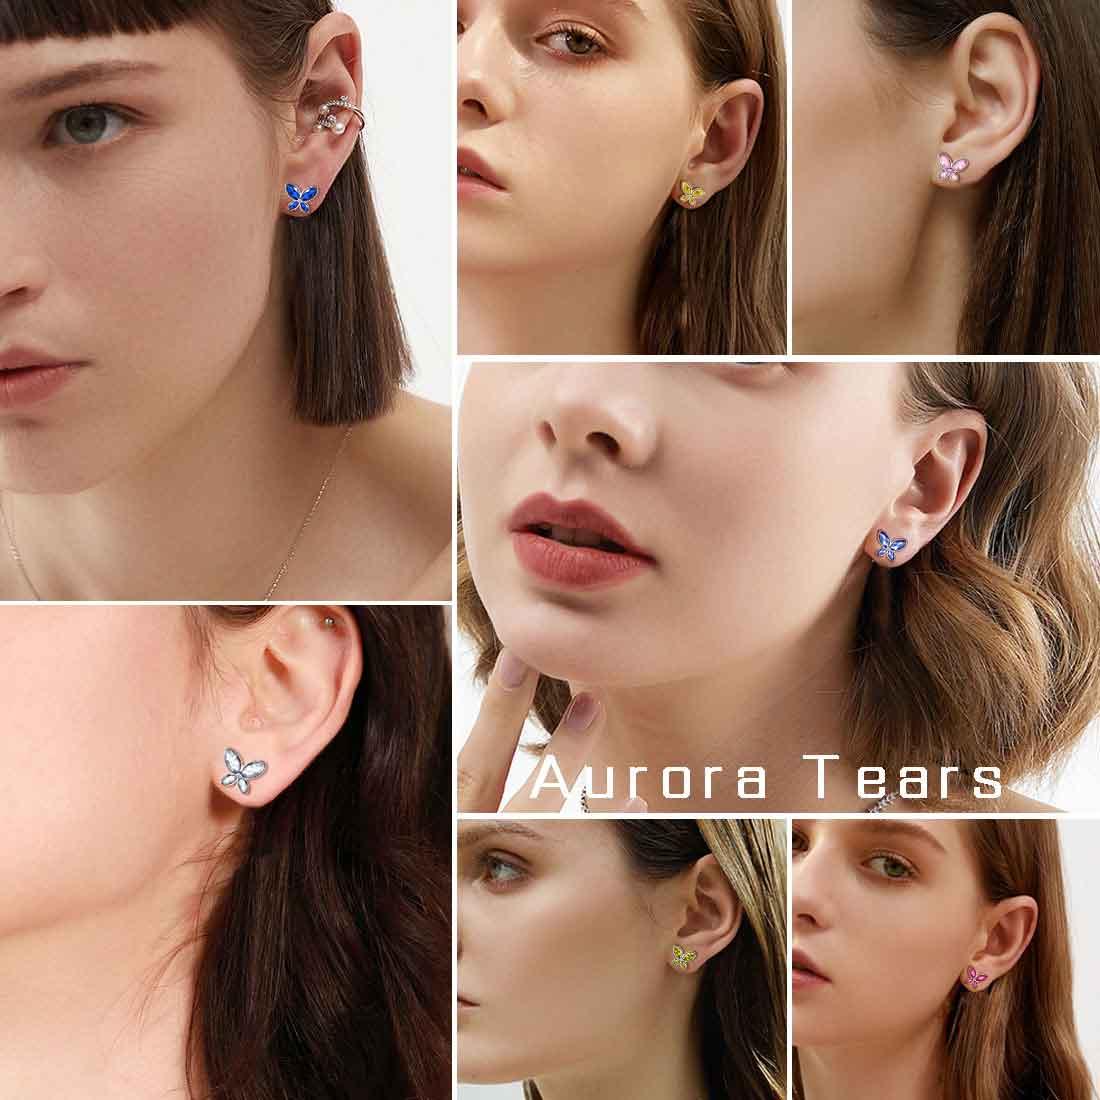 Butterfly Stud Earrings Birthstone August Peridot - Earrings - Aurora Tears